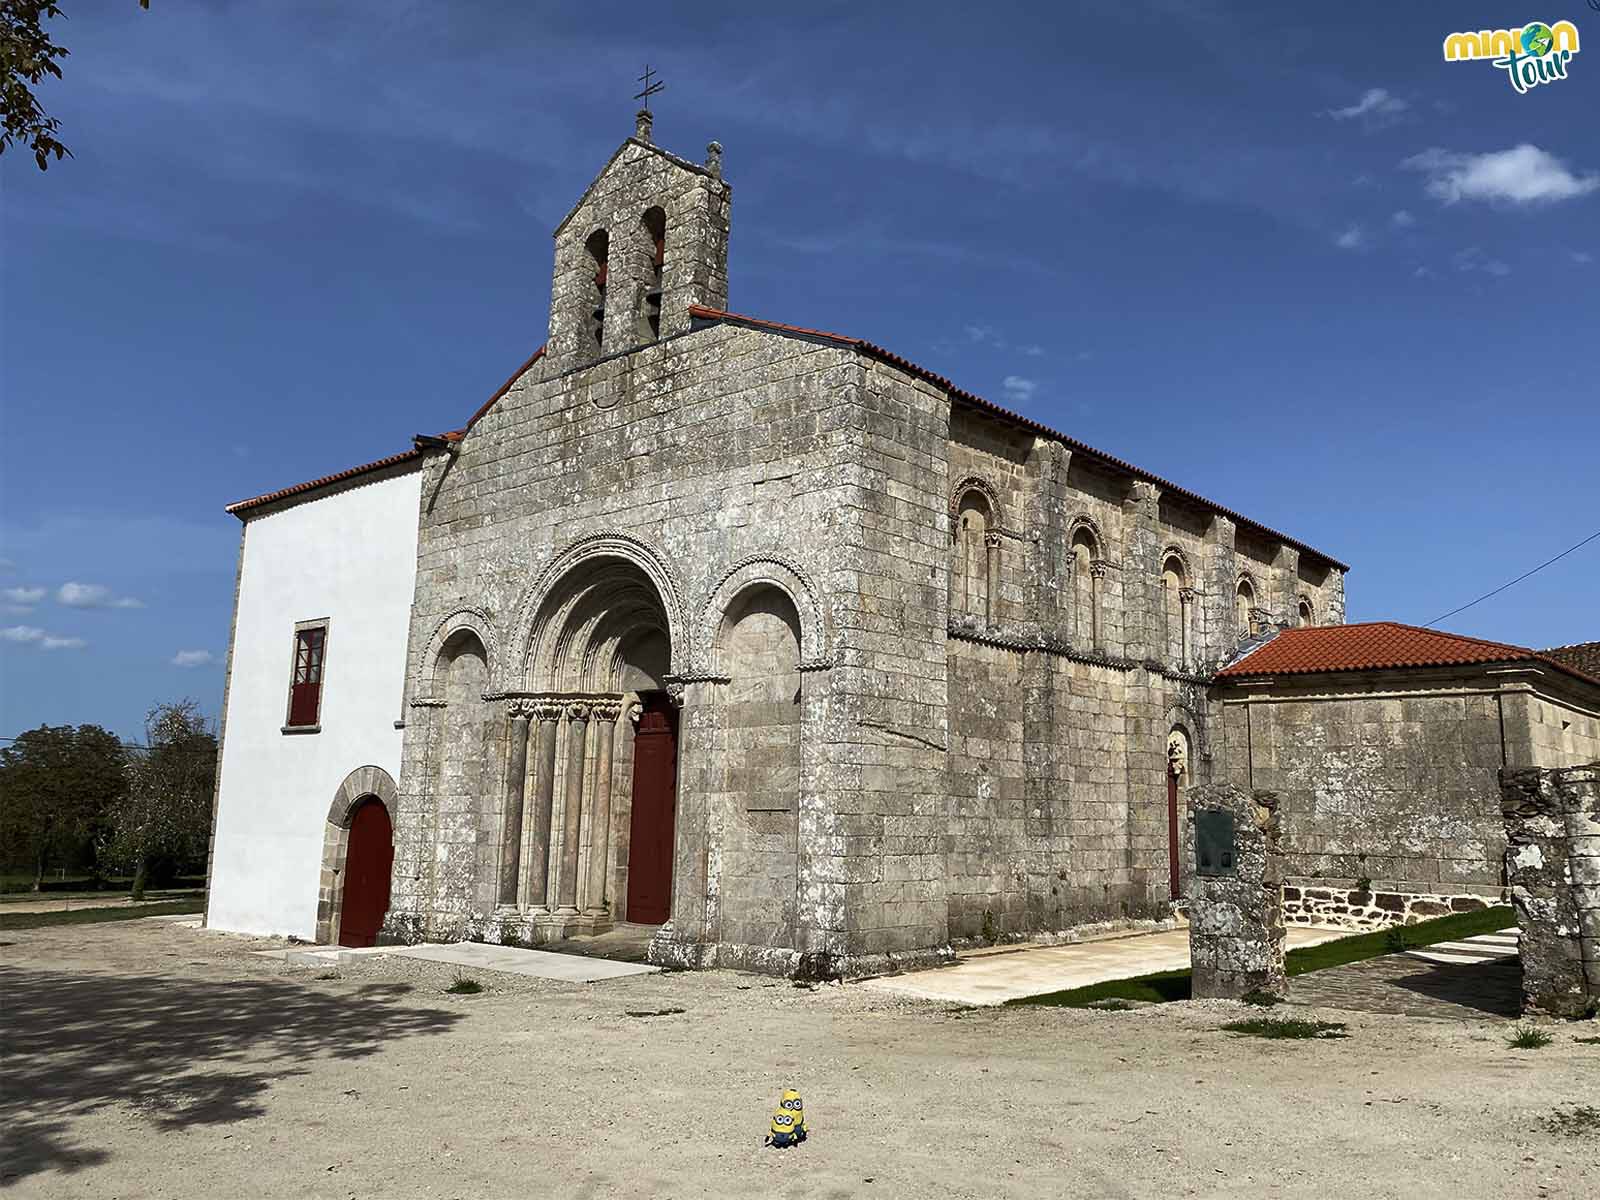 La Iglesia de San Pelayo de Diomondi estaba destinada a ser mucho más grande